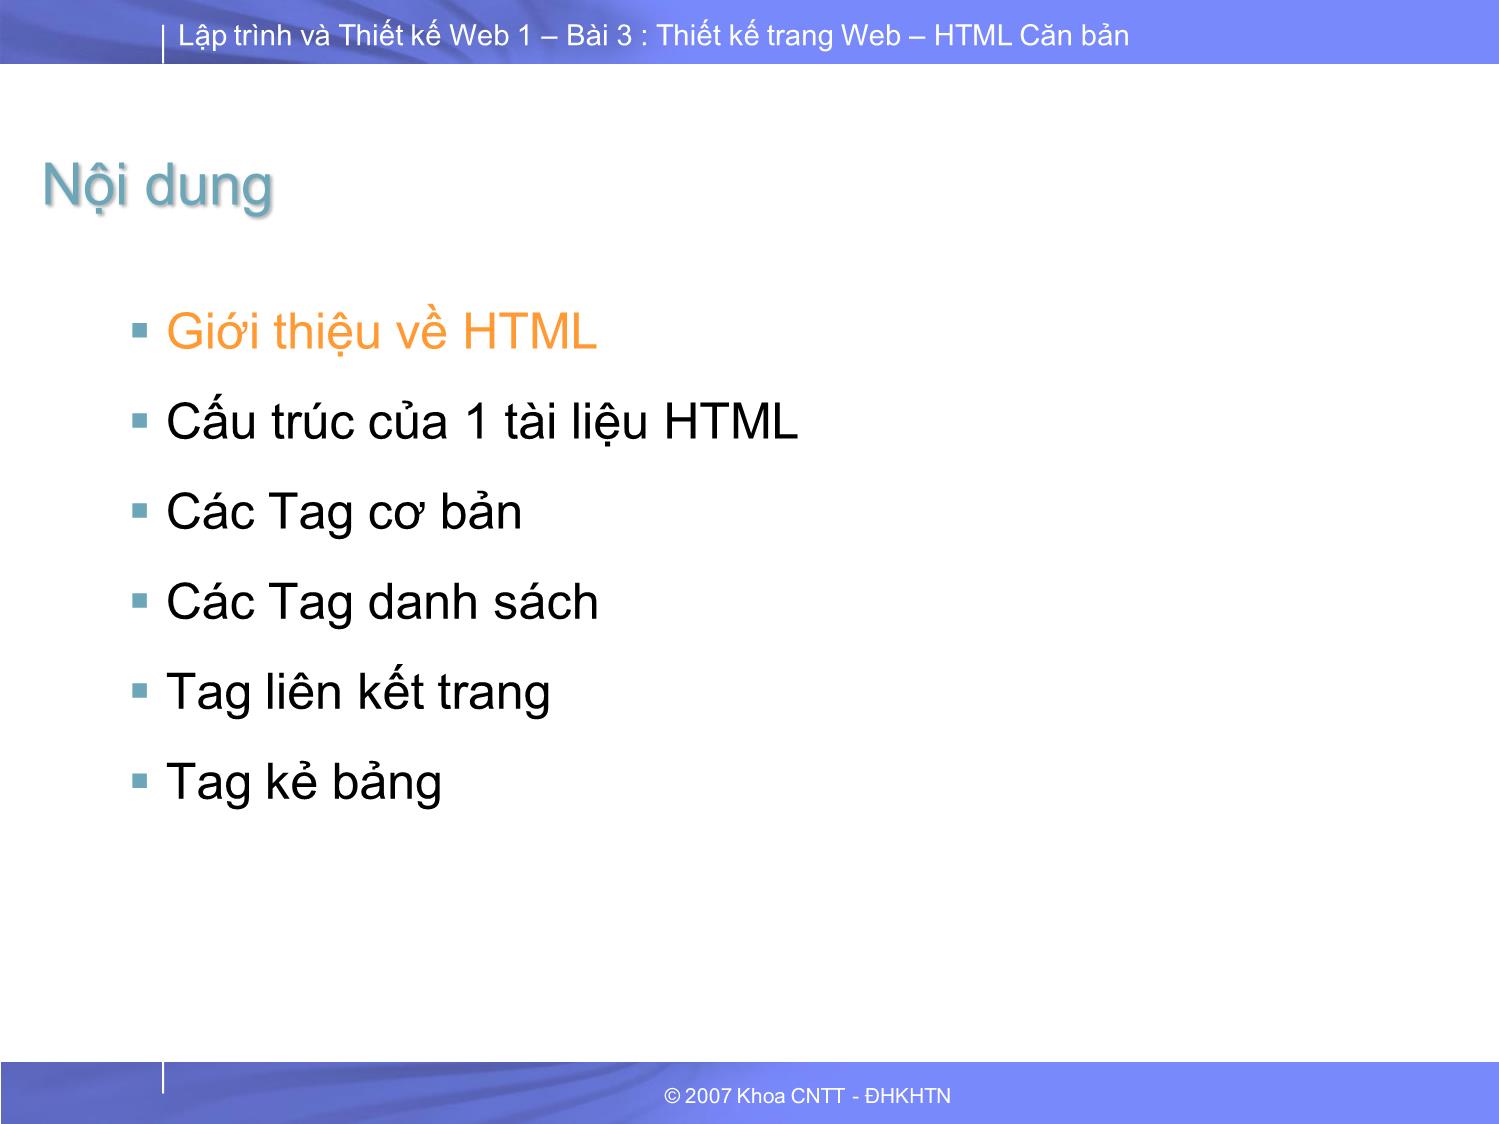 Lập trình và thiết kế Web 1 - Bài 3: Thiết kế trang Web HTML căn bản trang 3